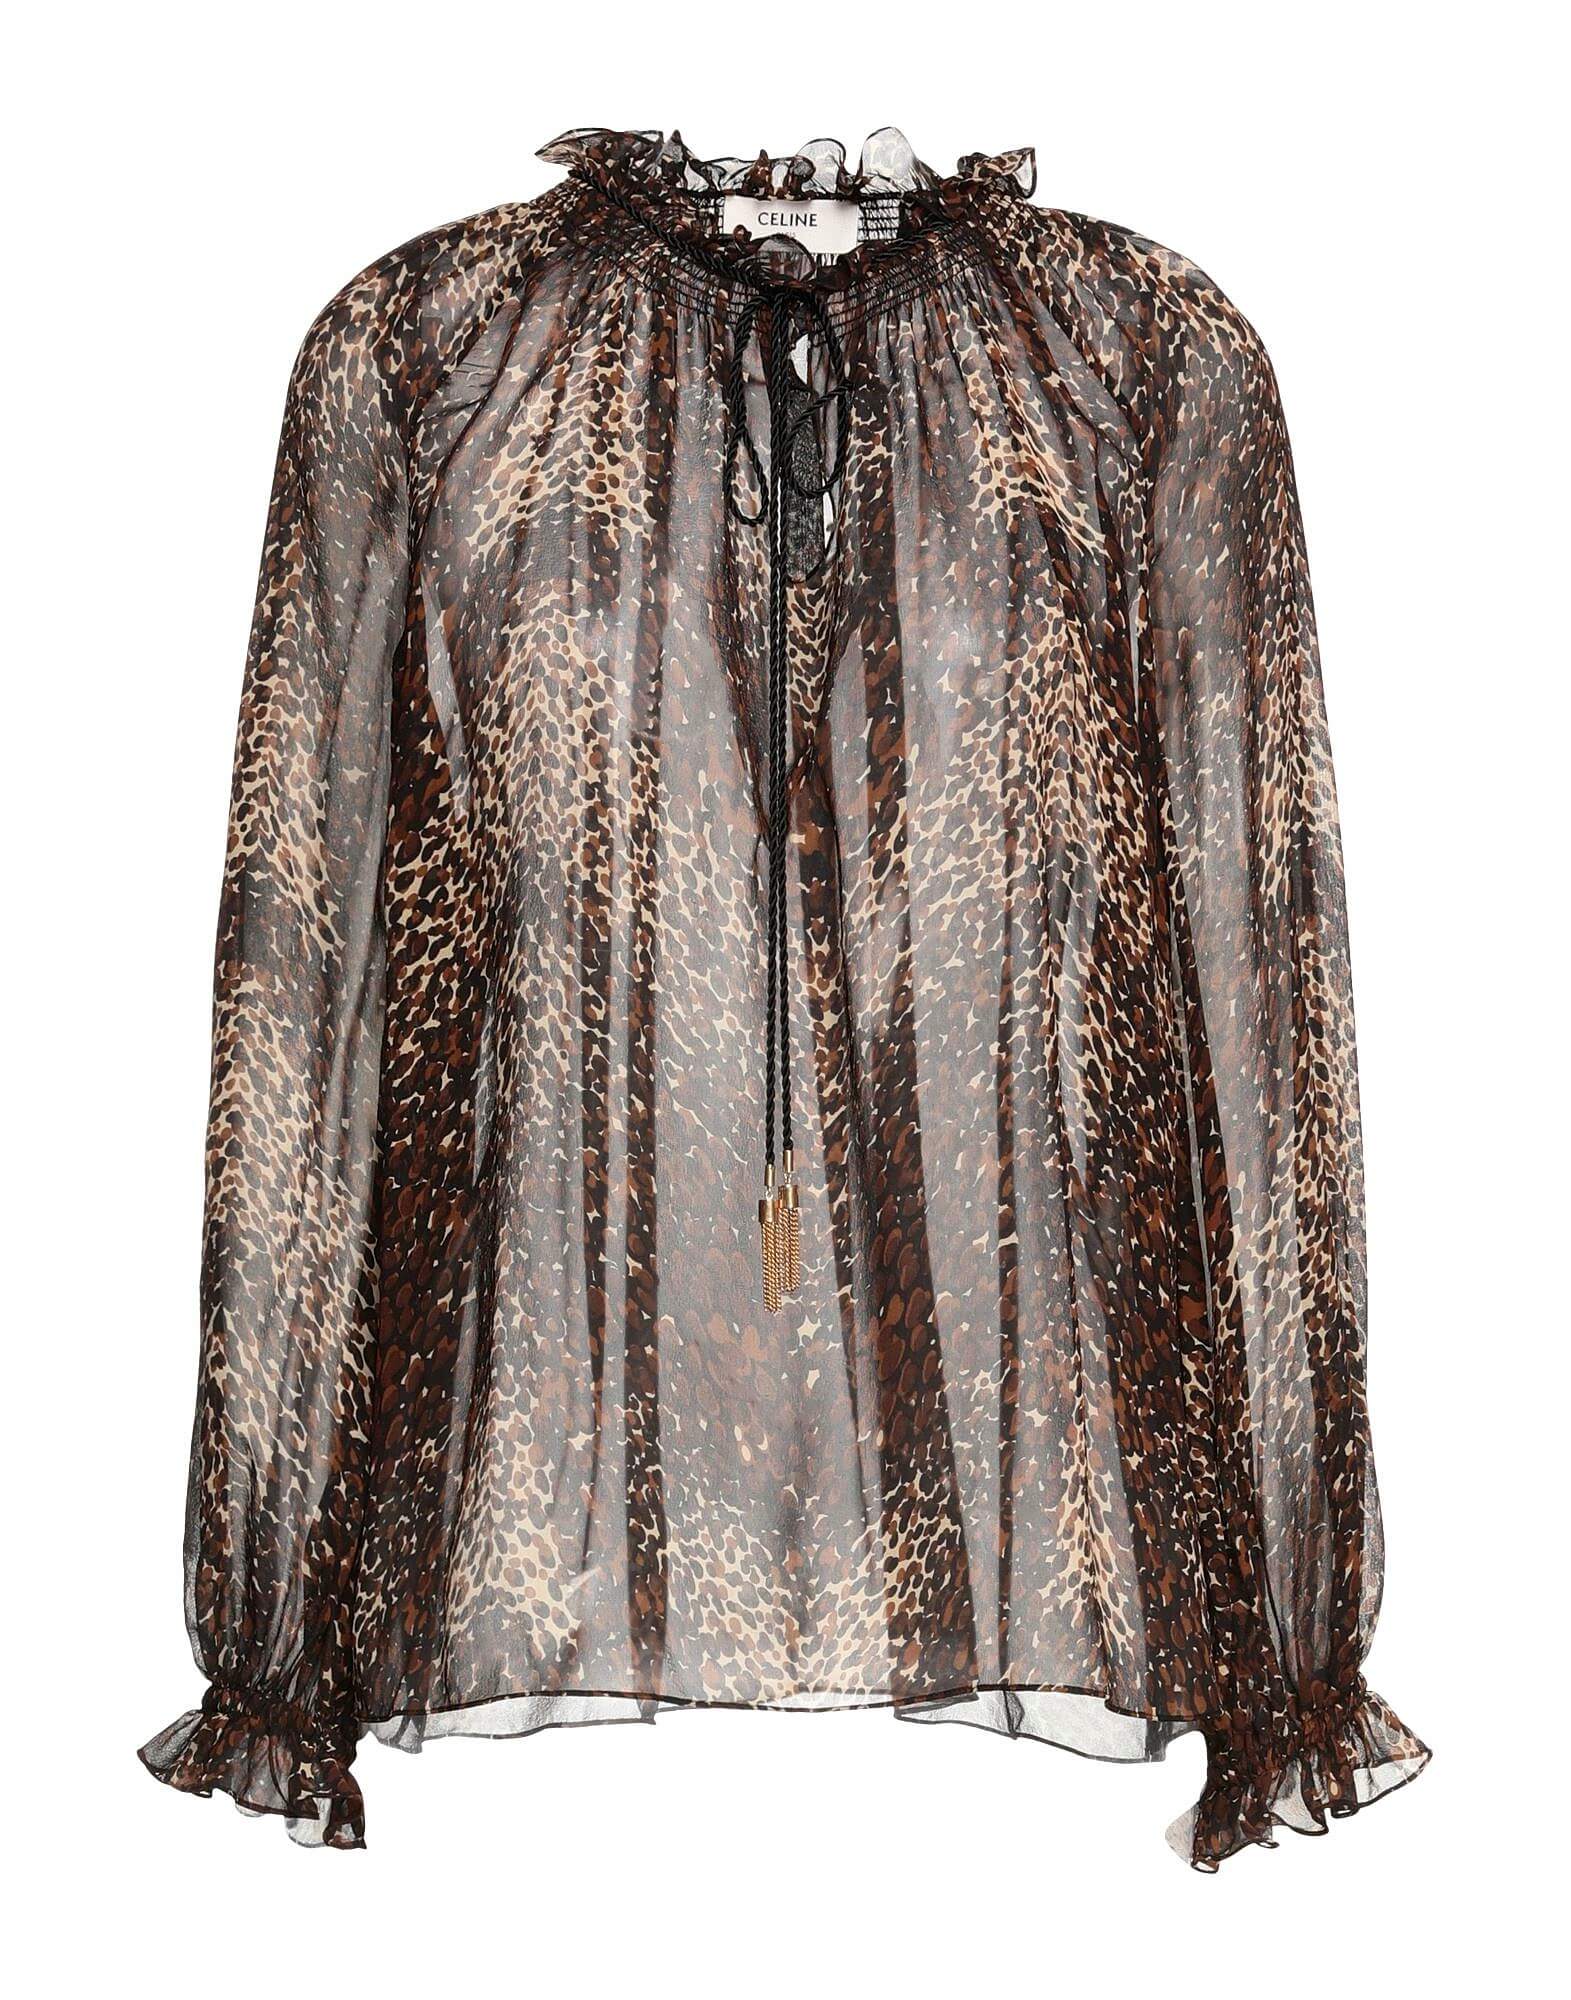 Блуза с леопардовым принтом CELINE, коричневый/бежевый блуза moment с рюшами sanctuary цвет brushed floral